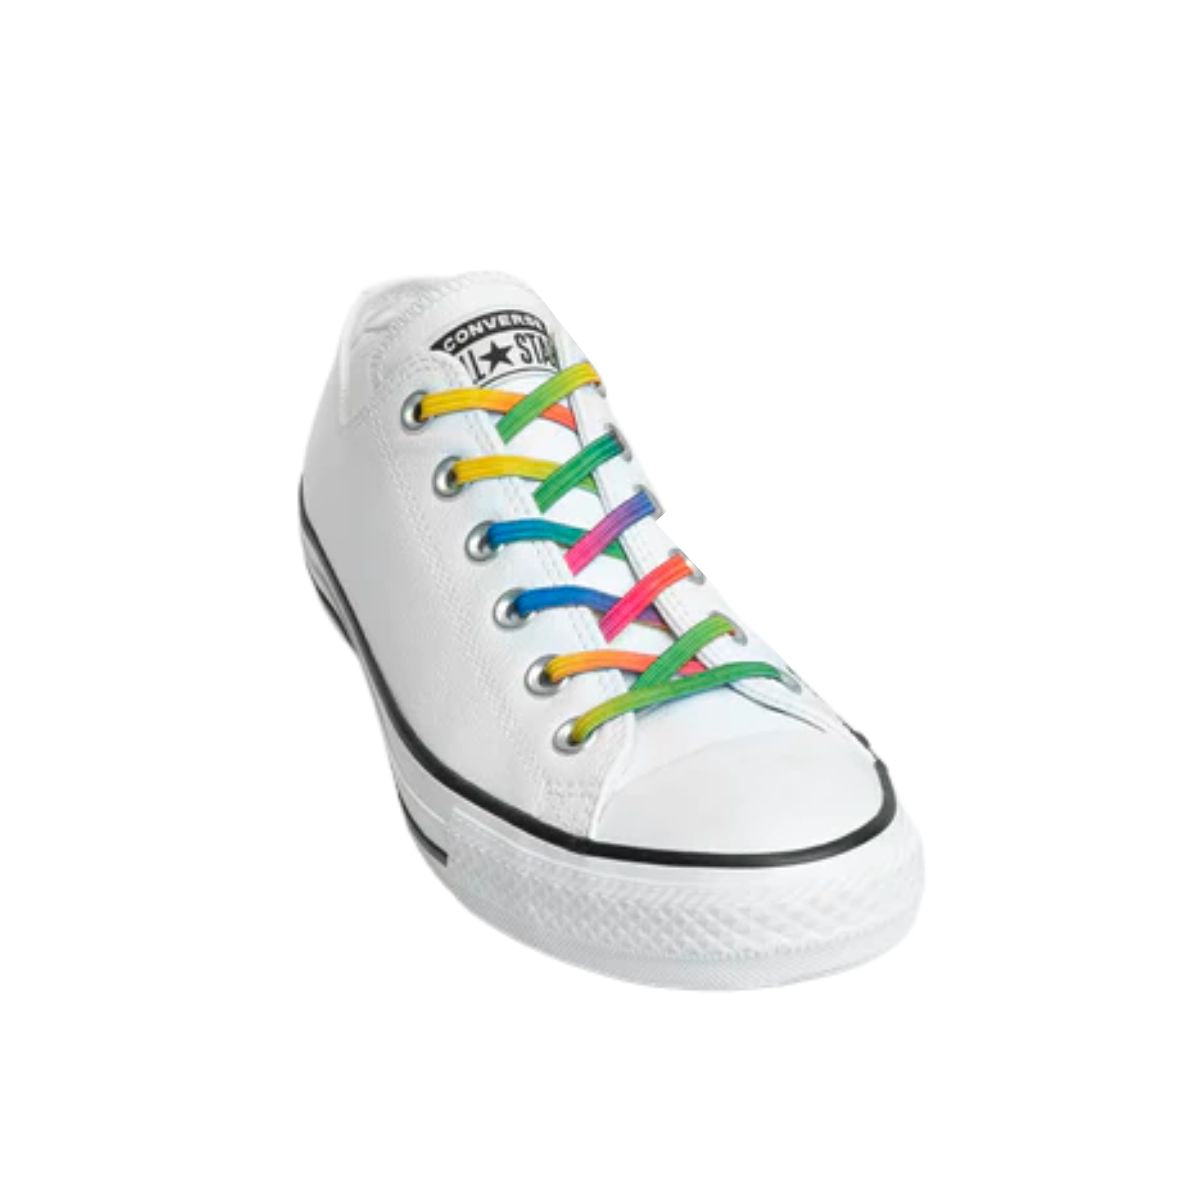 Replacement for Shoe Laces Rainbow No-Tie Shoelaces - Kicks Shoelaces